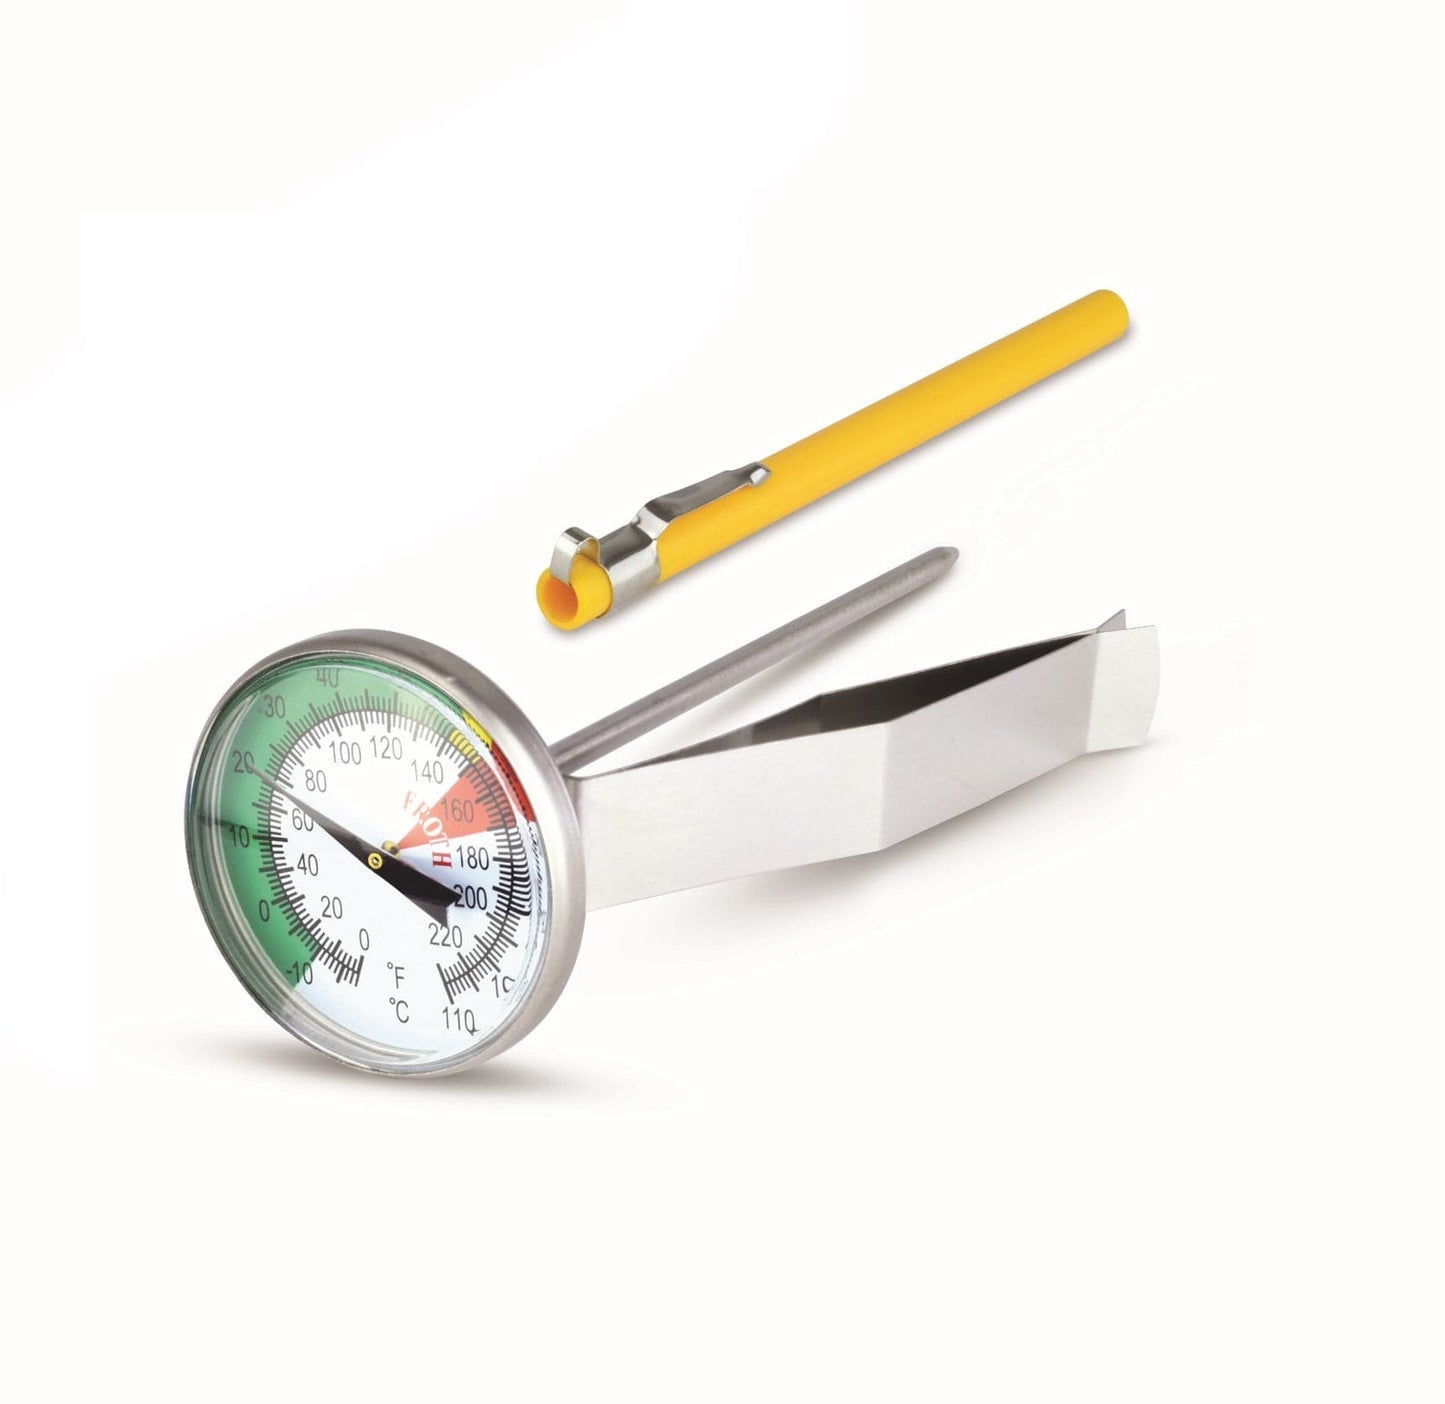 un termometro in schiuma Thermometer.fr con accanto un tappo giallo.